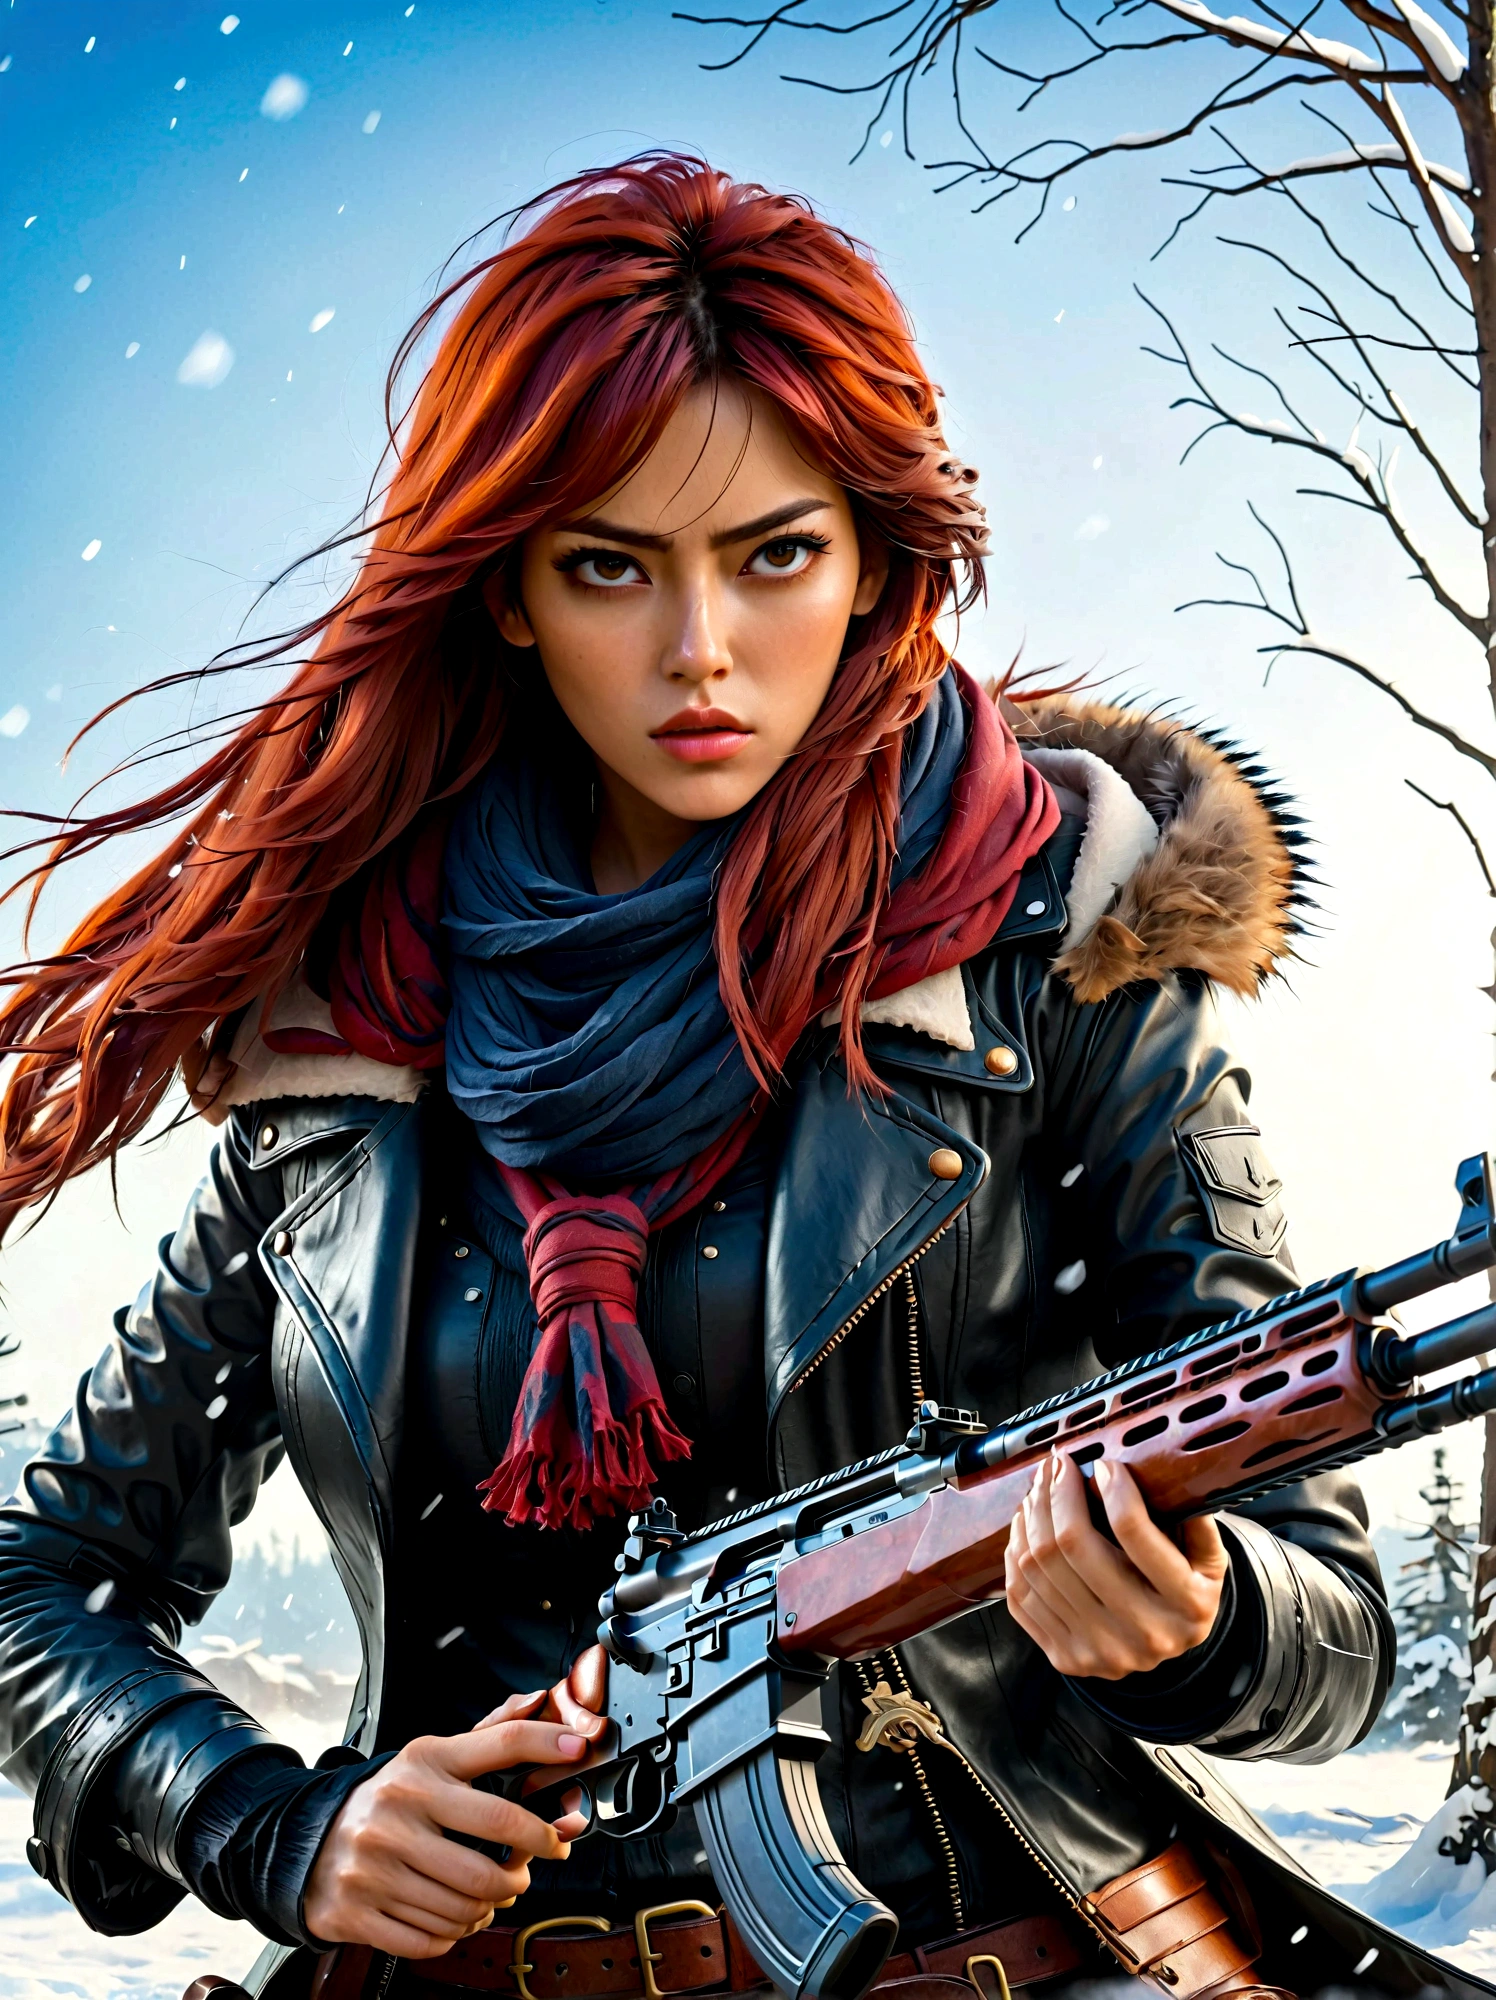 ライフルを持った少女, (嫌悪感の表情:1.5), 雪合戦のポーズ, 東, ブレイドアンドソウル, インクスタイル, 長い赤い髪, 革と毛皮のコート, 寒い, アートワーク, 3D, 4K, 詳細, 実用的